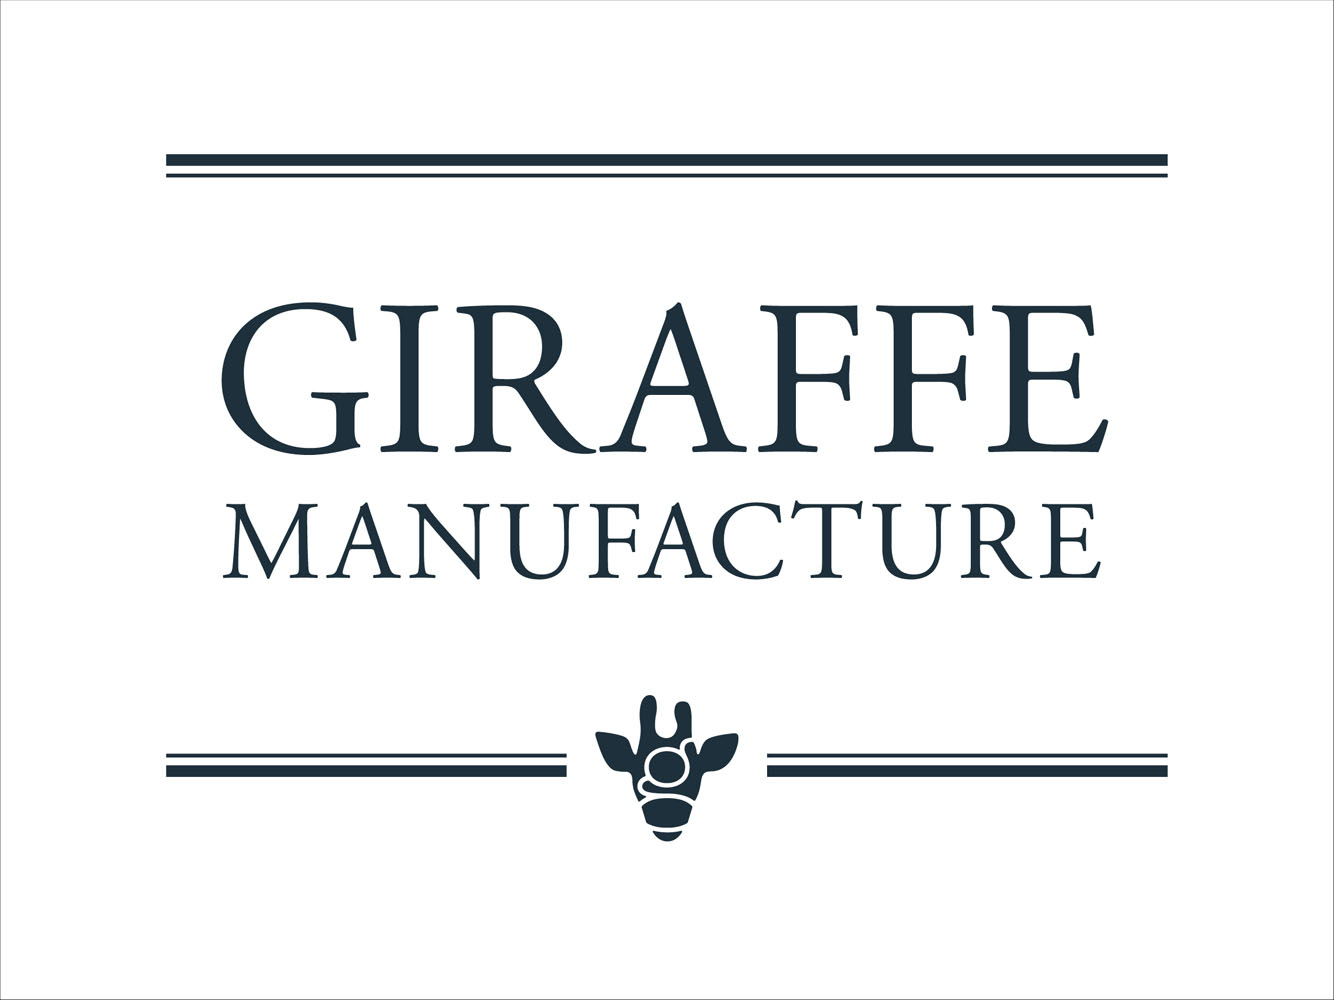 giraffe_manufacture_book2